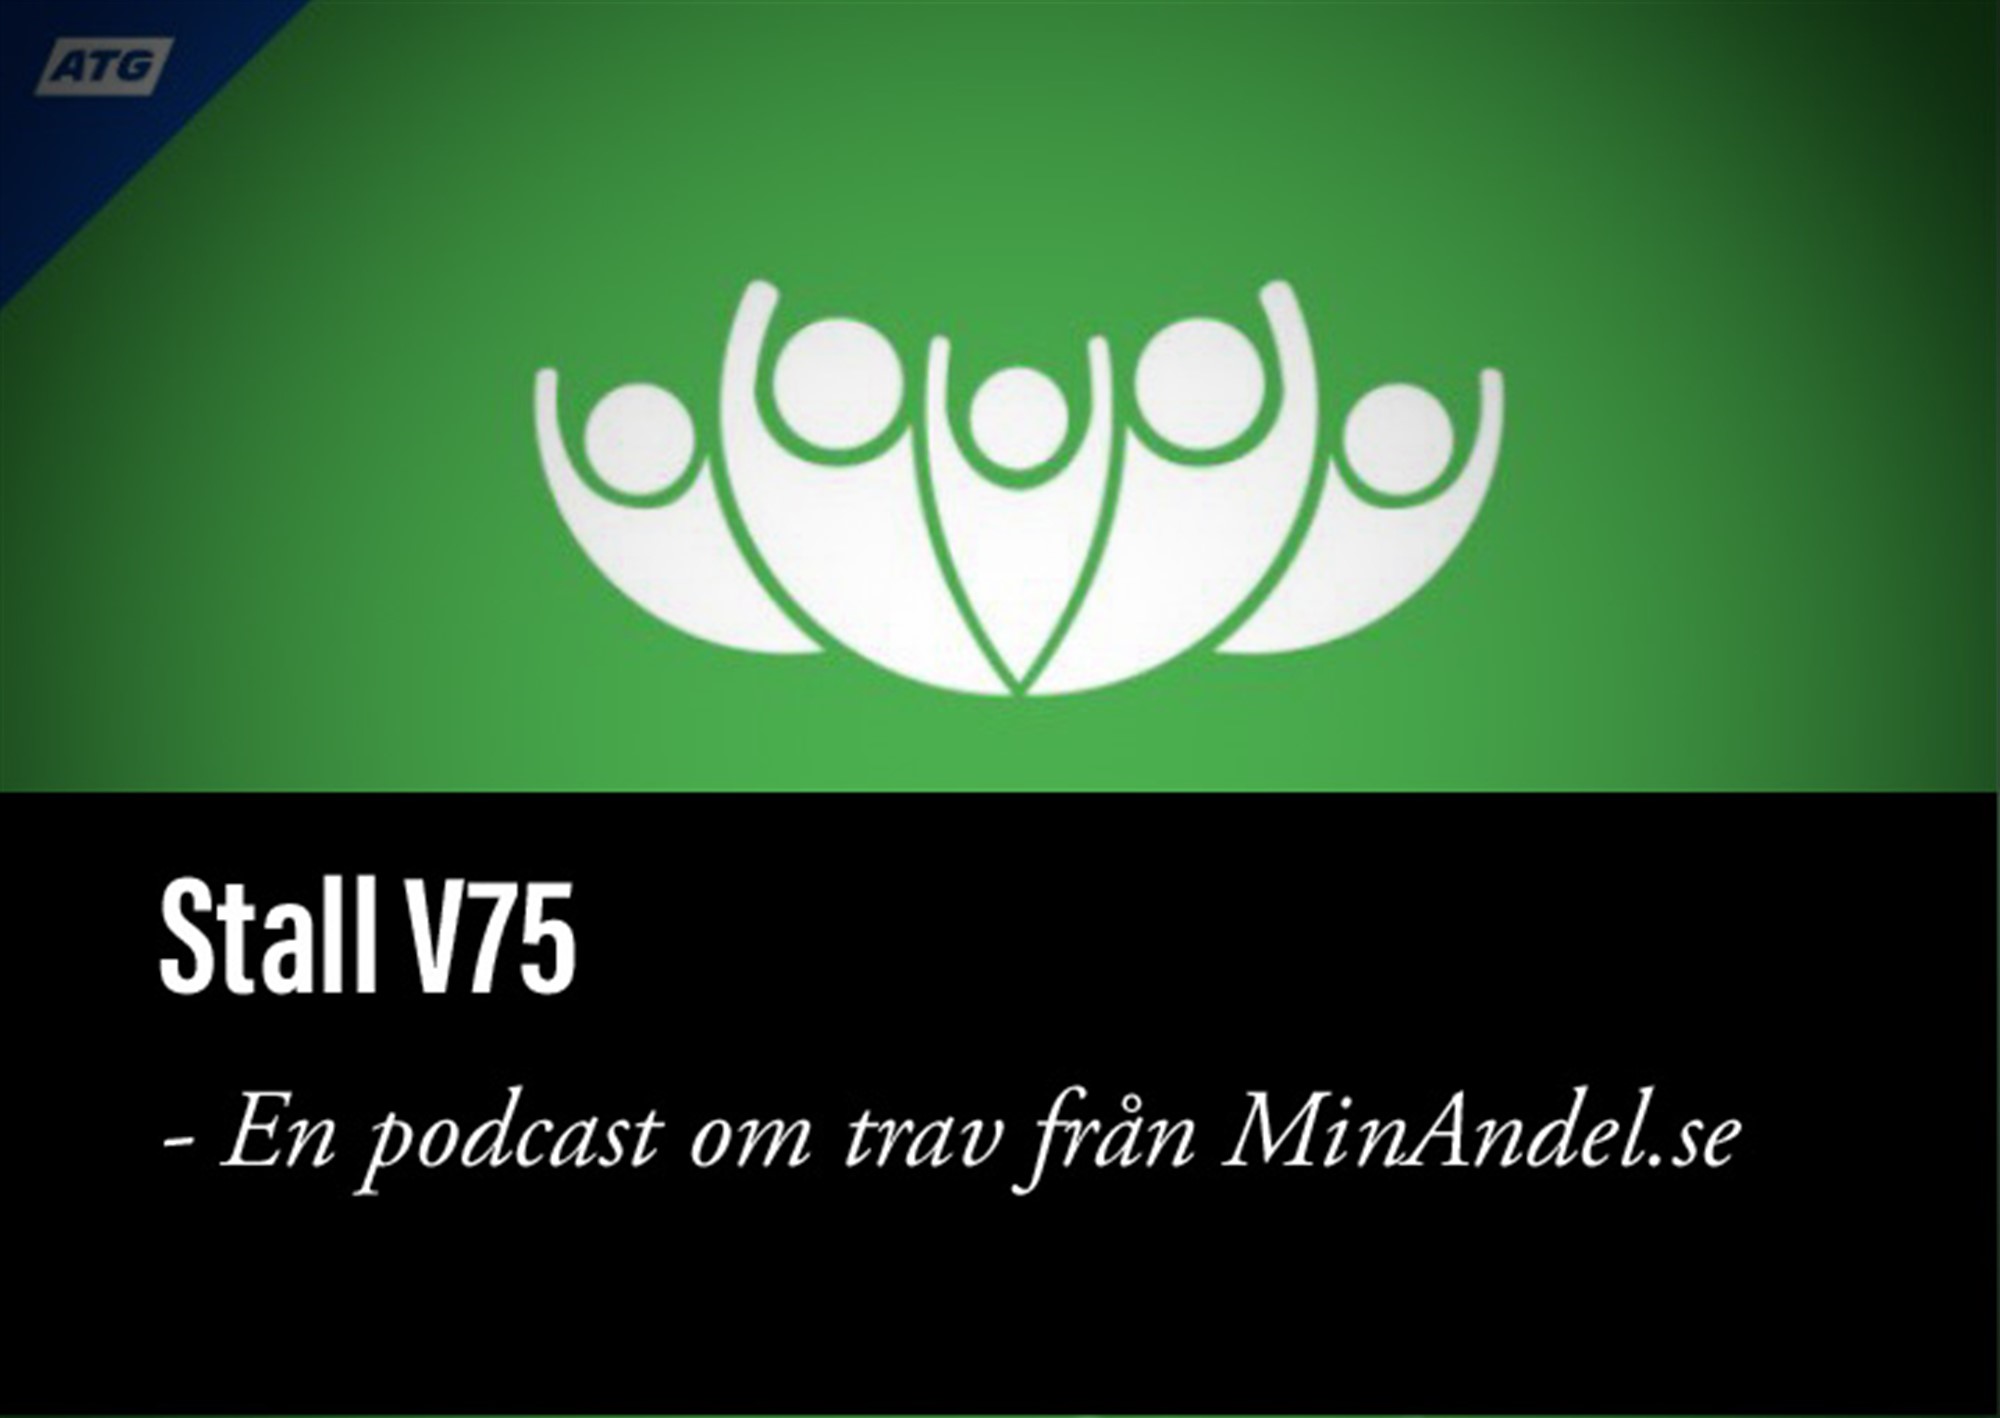 V75 Bjerke 18/11. Presenteras av MinAndel.se